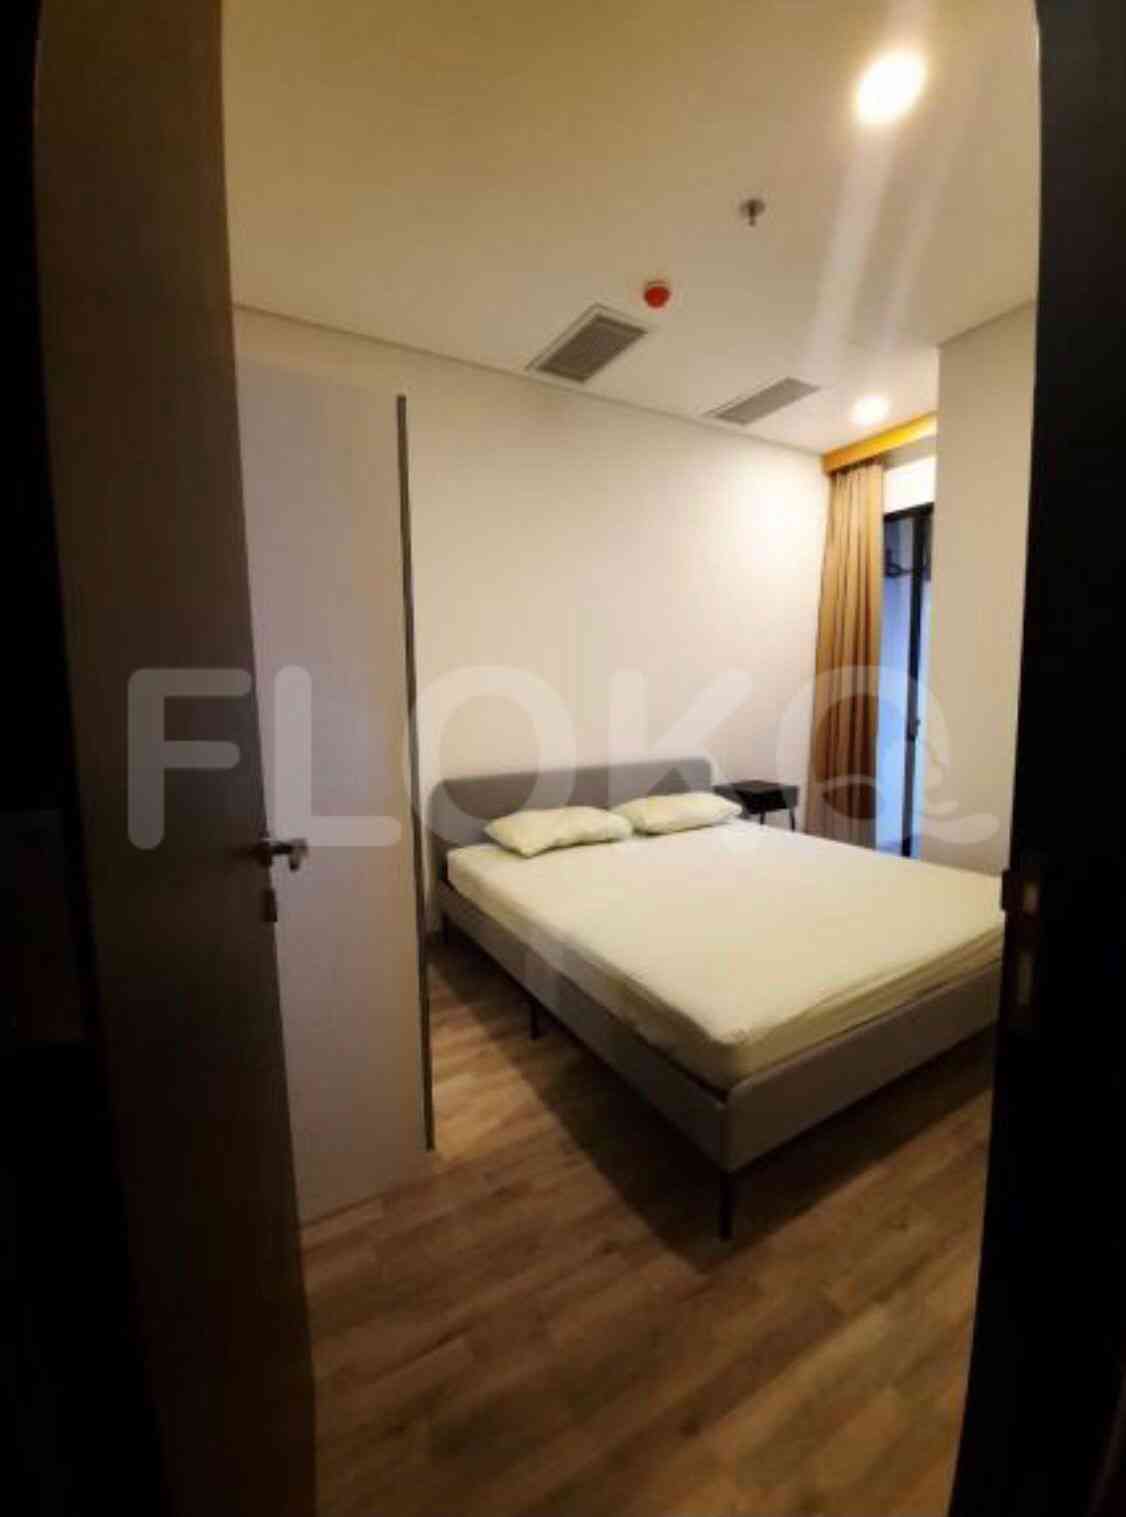 3 Bedroom on 15th Floor for Rent in Sudirman Suites Jakarta - fsu78b 3